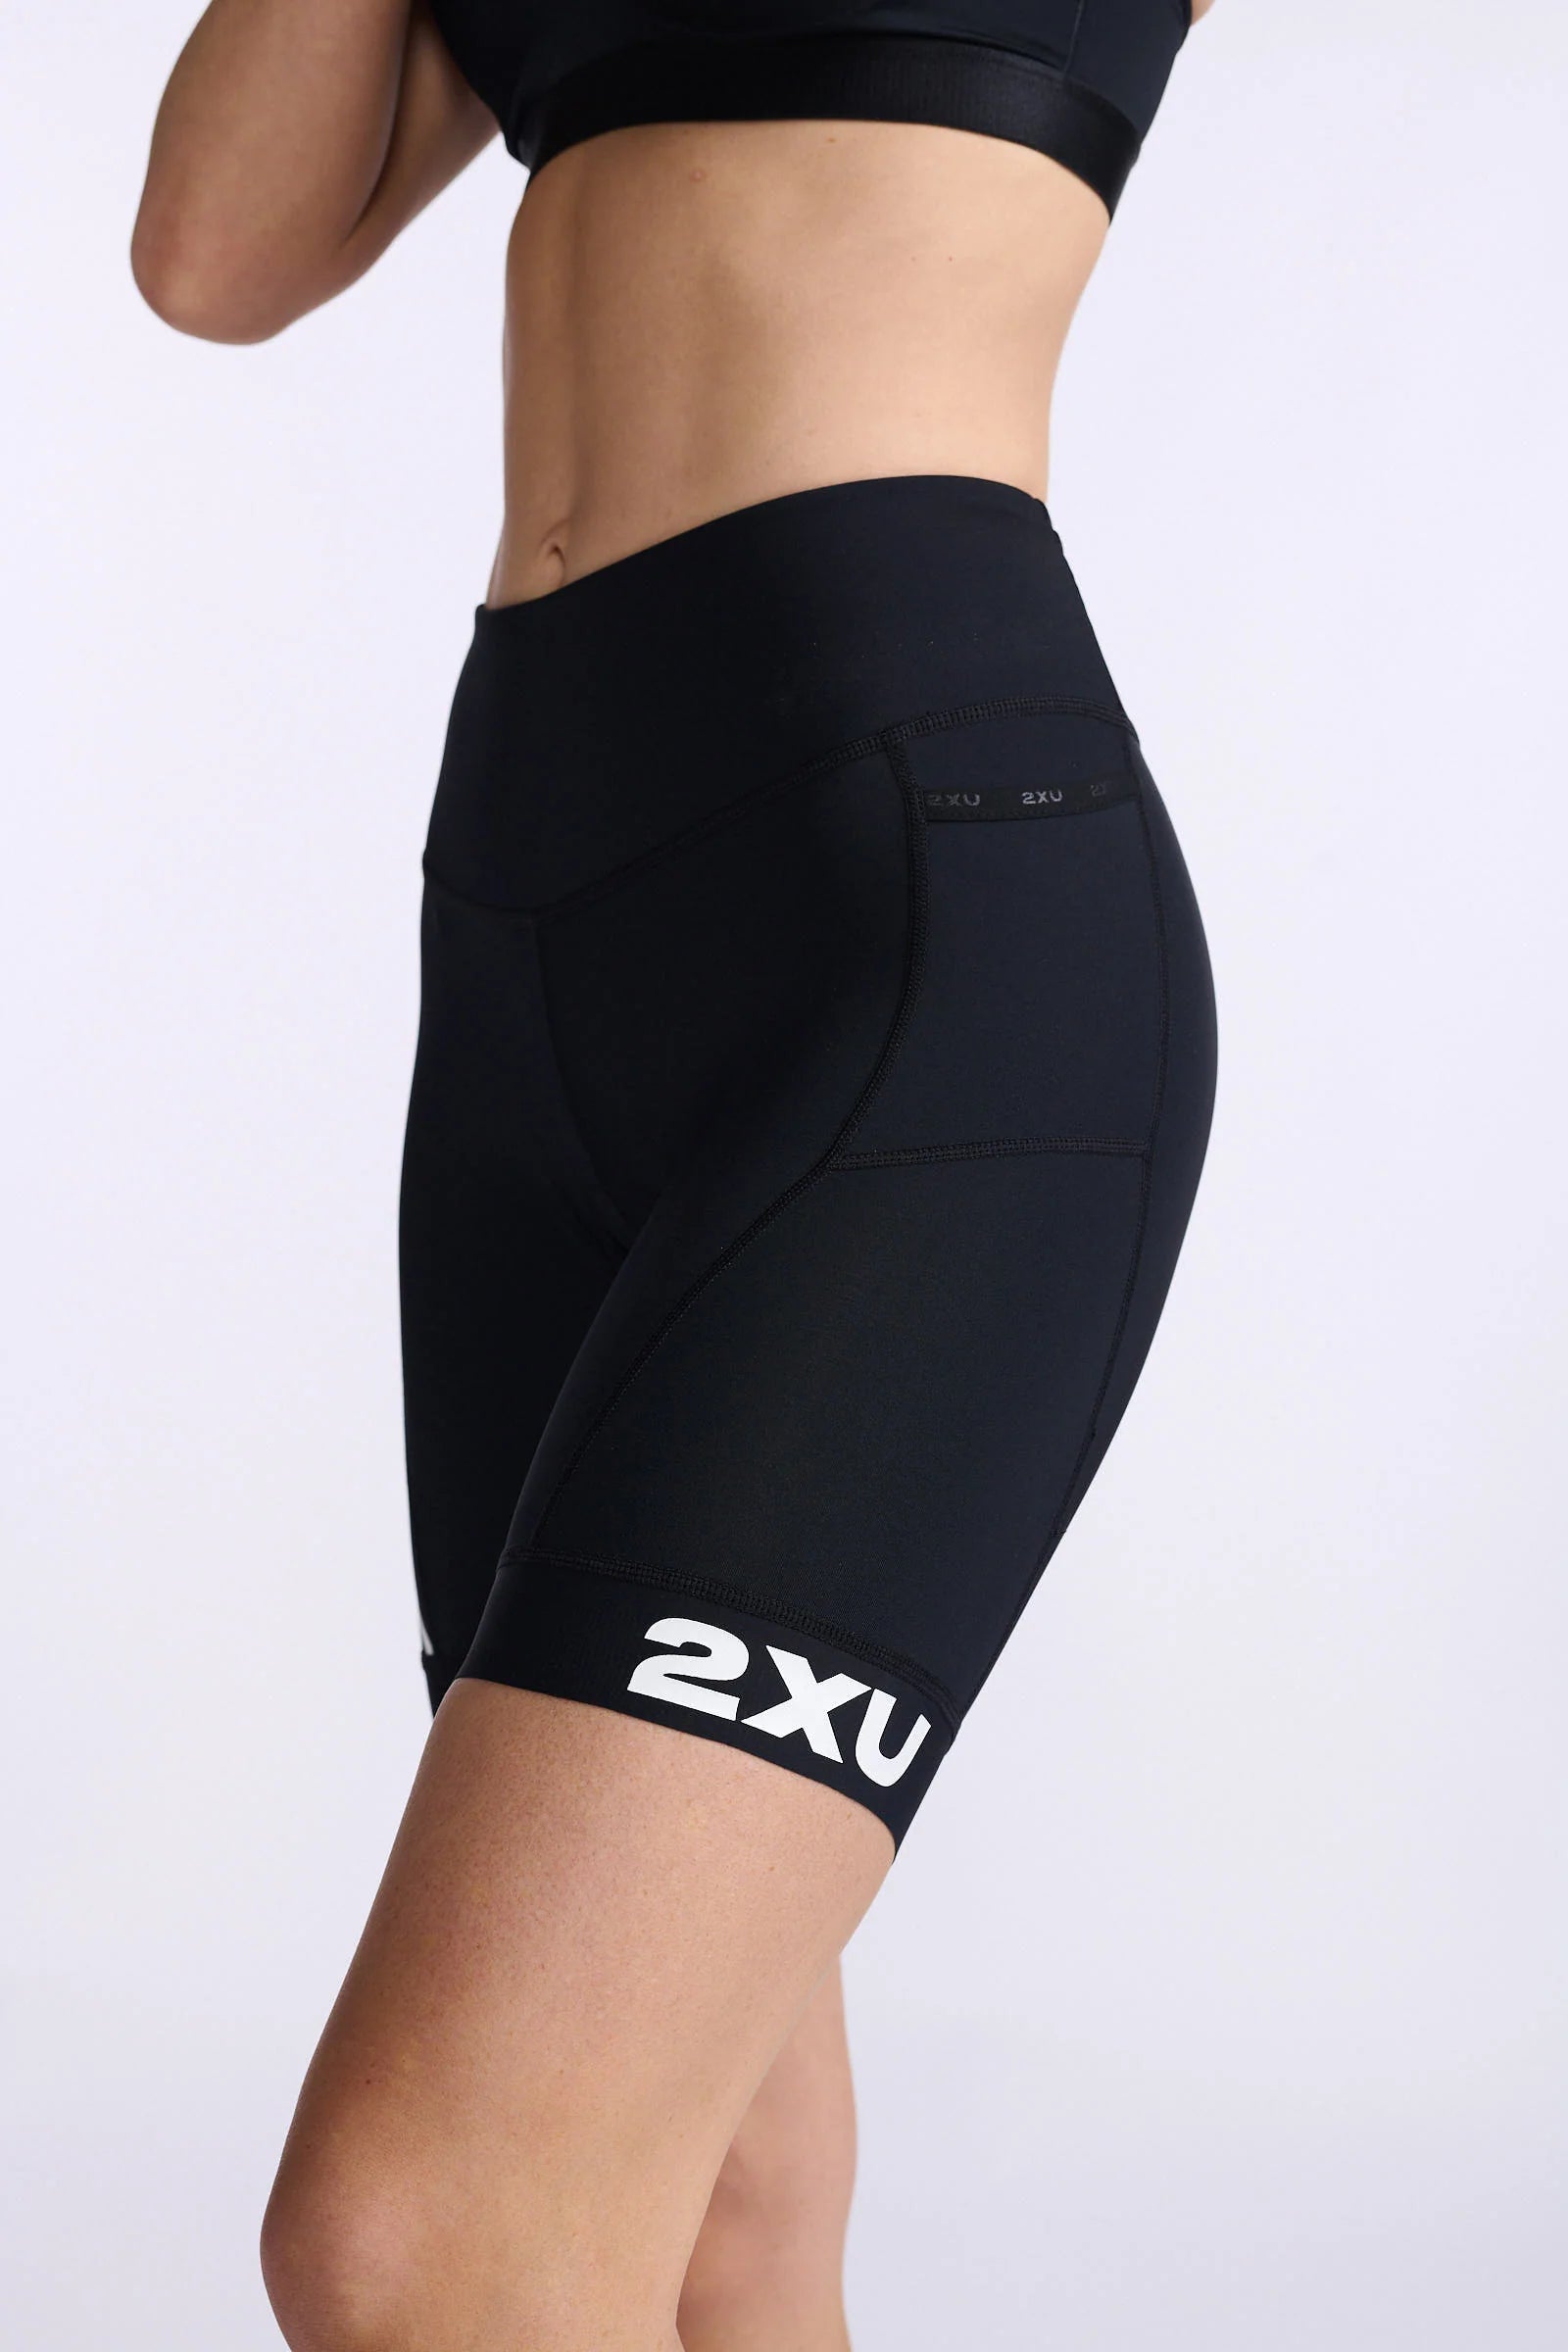 2XU Core Tri Short, Damen, black/white